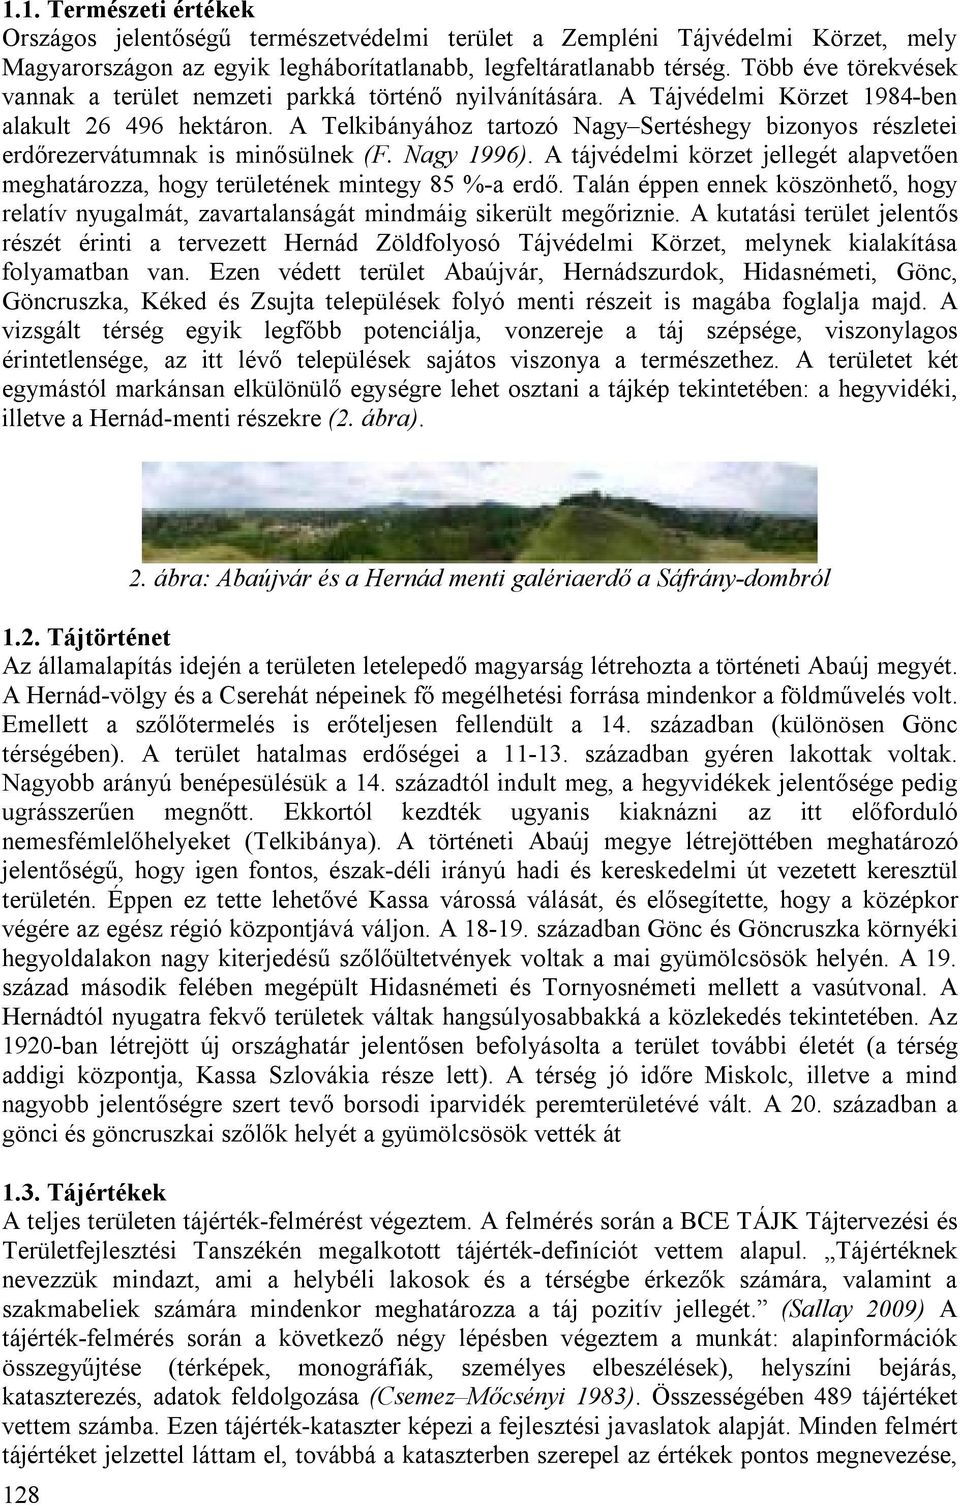 A Telkibányához tartozó Nagy Sertéshegy bizonyos részletei erdőrezervátumnak is minősülnek (F. Nagy 1996). A tájvédelmi körzet jellegét alapvetően meghatározza, hogy területének mintegy 85 %-a erdő.